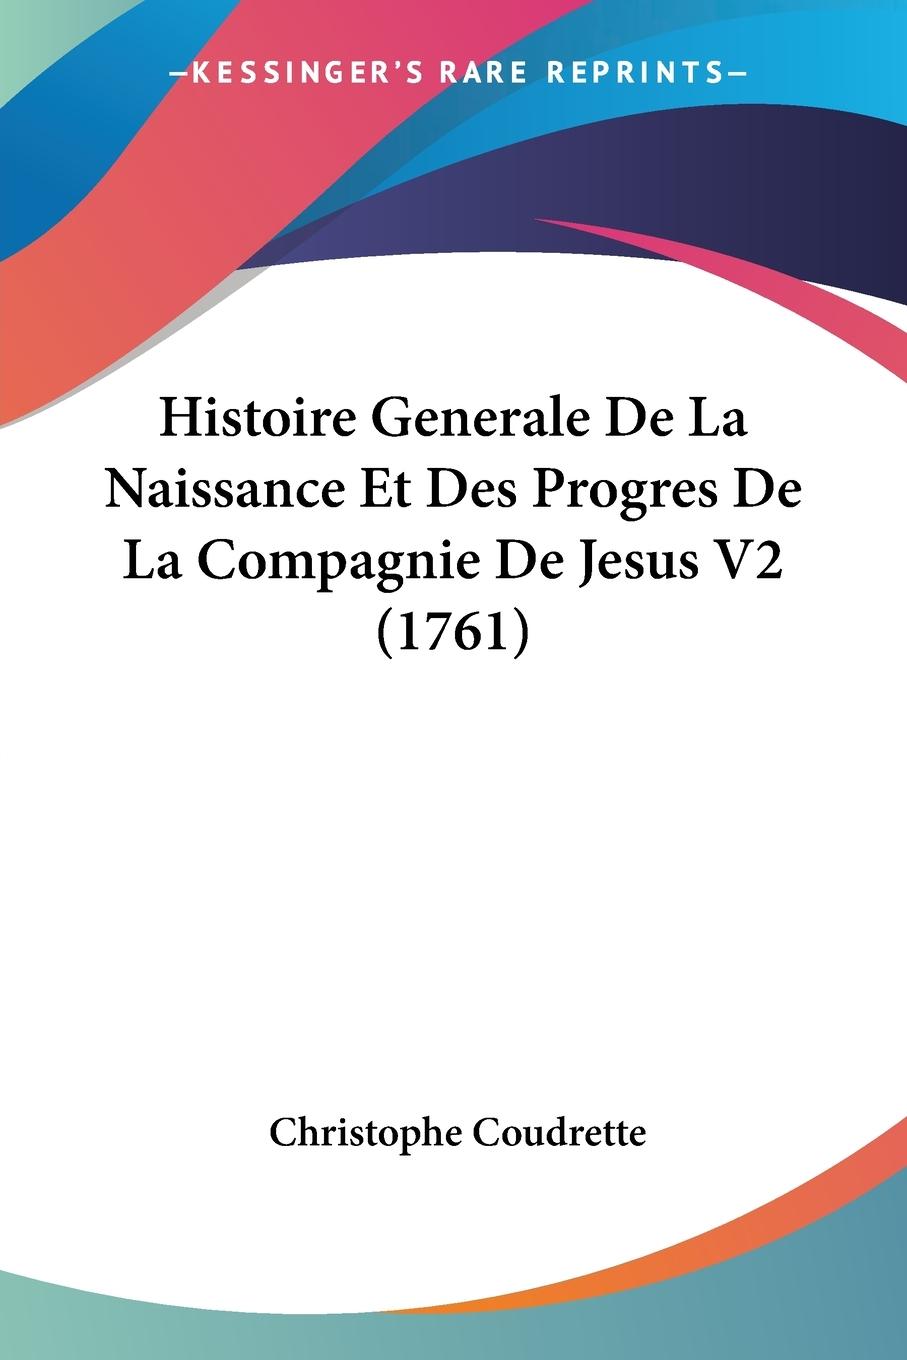 Histoire Generale De La Naissance Et Des Progres De La Compagnie De Jesus V2 (1761) - Coudrette, Christophe